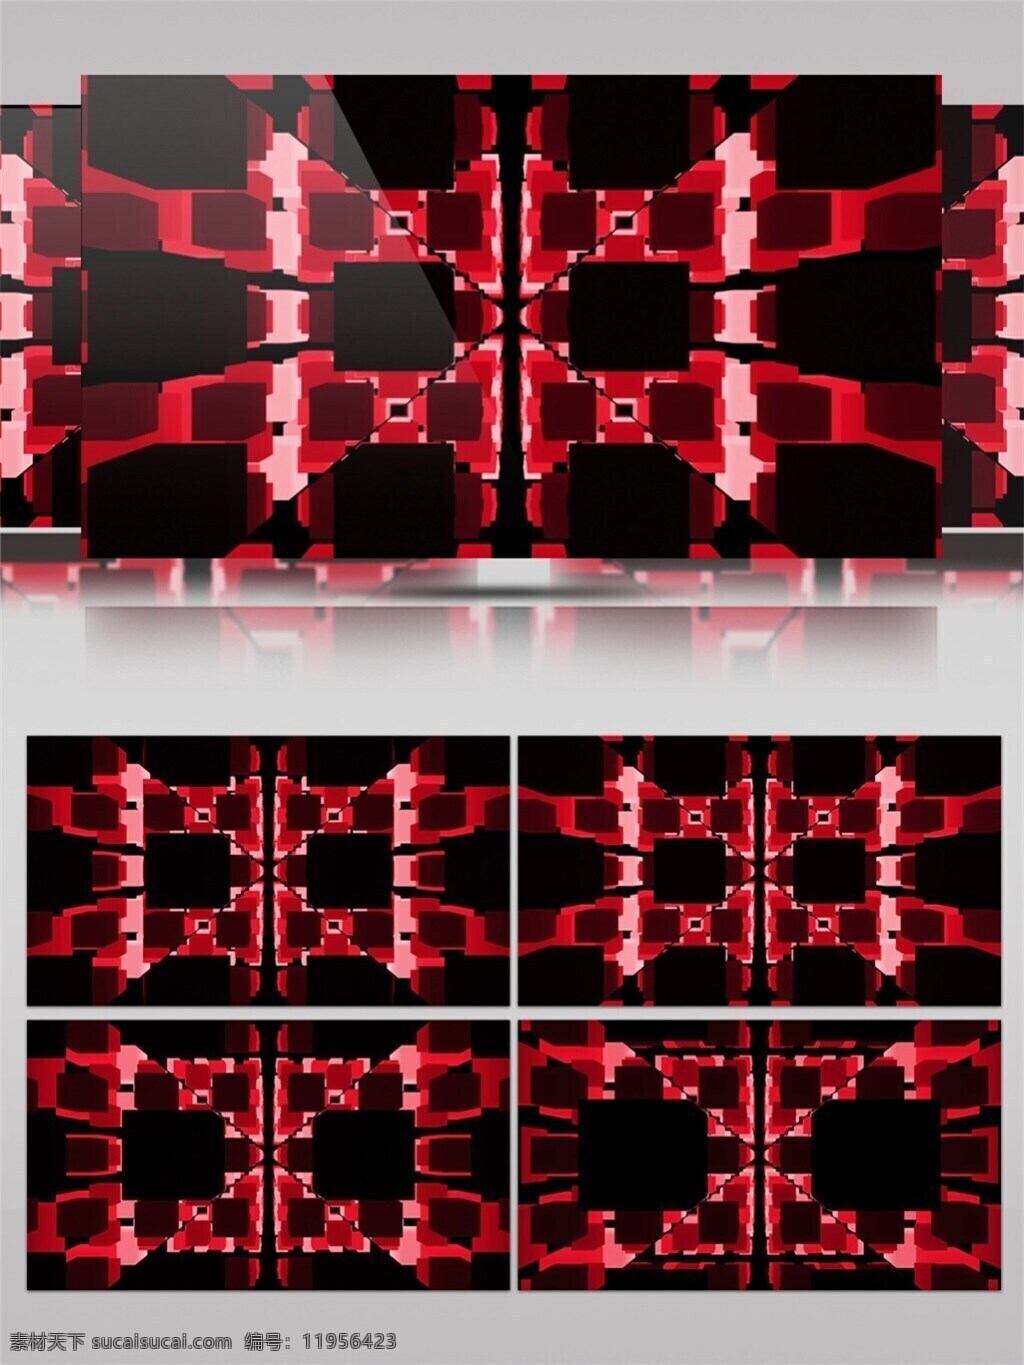 三维 方块 阵 红 黑 转化 视频 三维立体 产品展示 动态前进 视频素材 动态视频素材